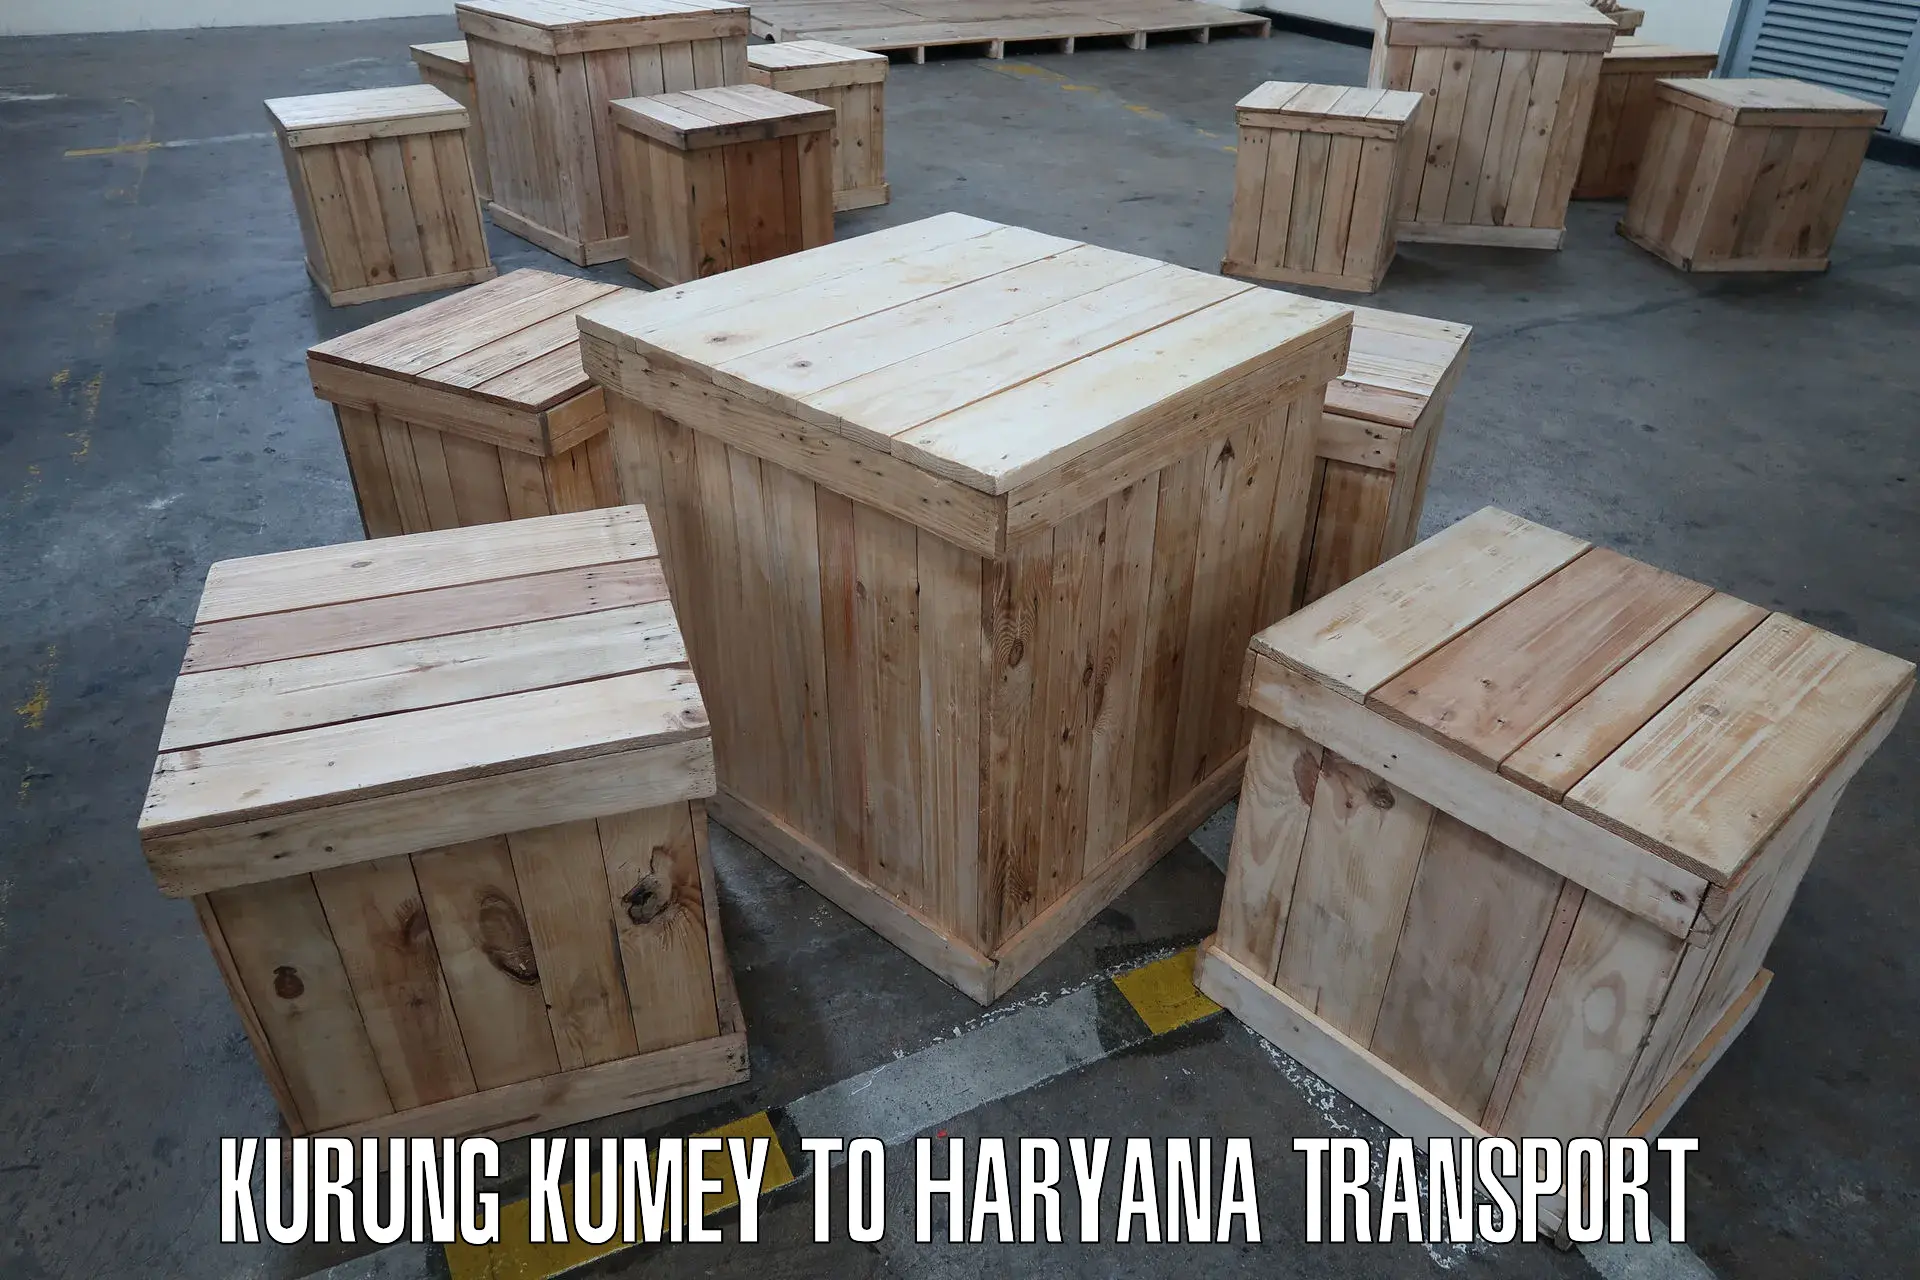 Daily transport service Kurung Kumey to Budha Khera